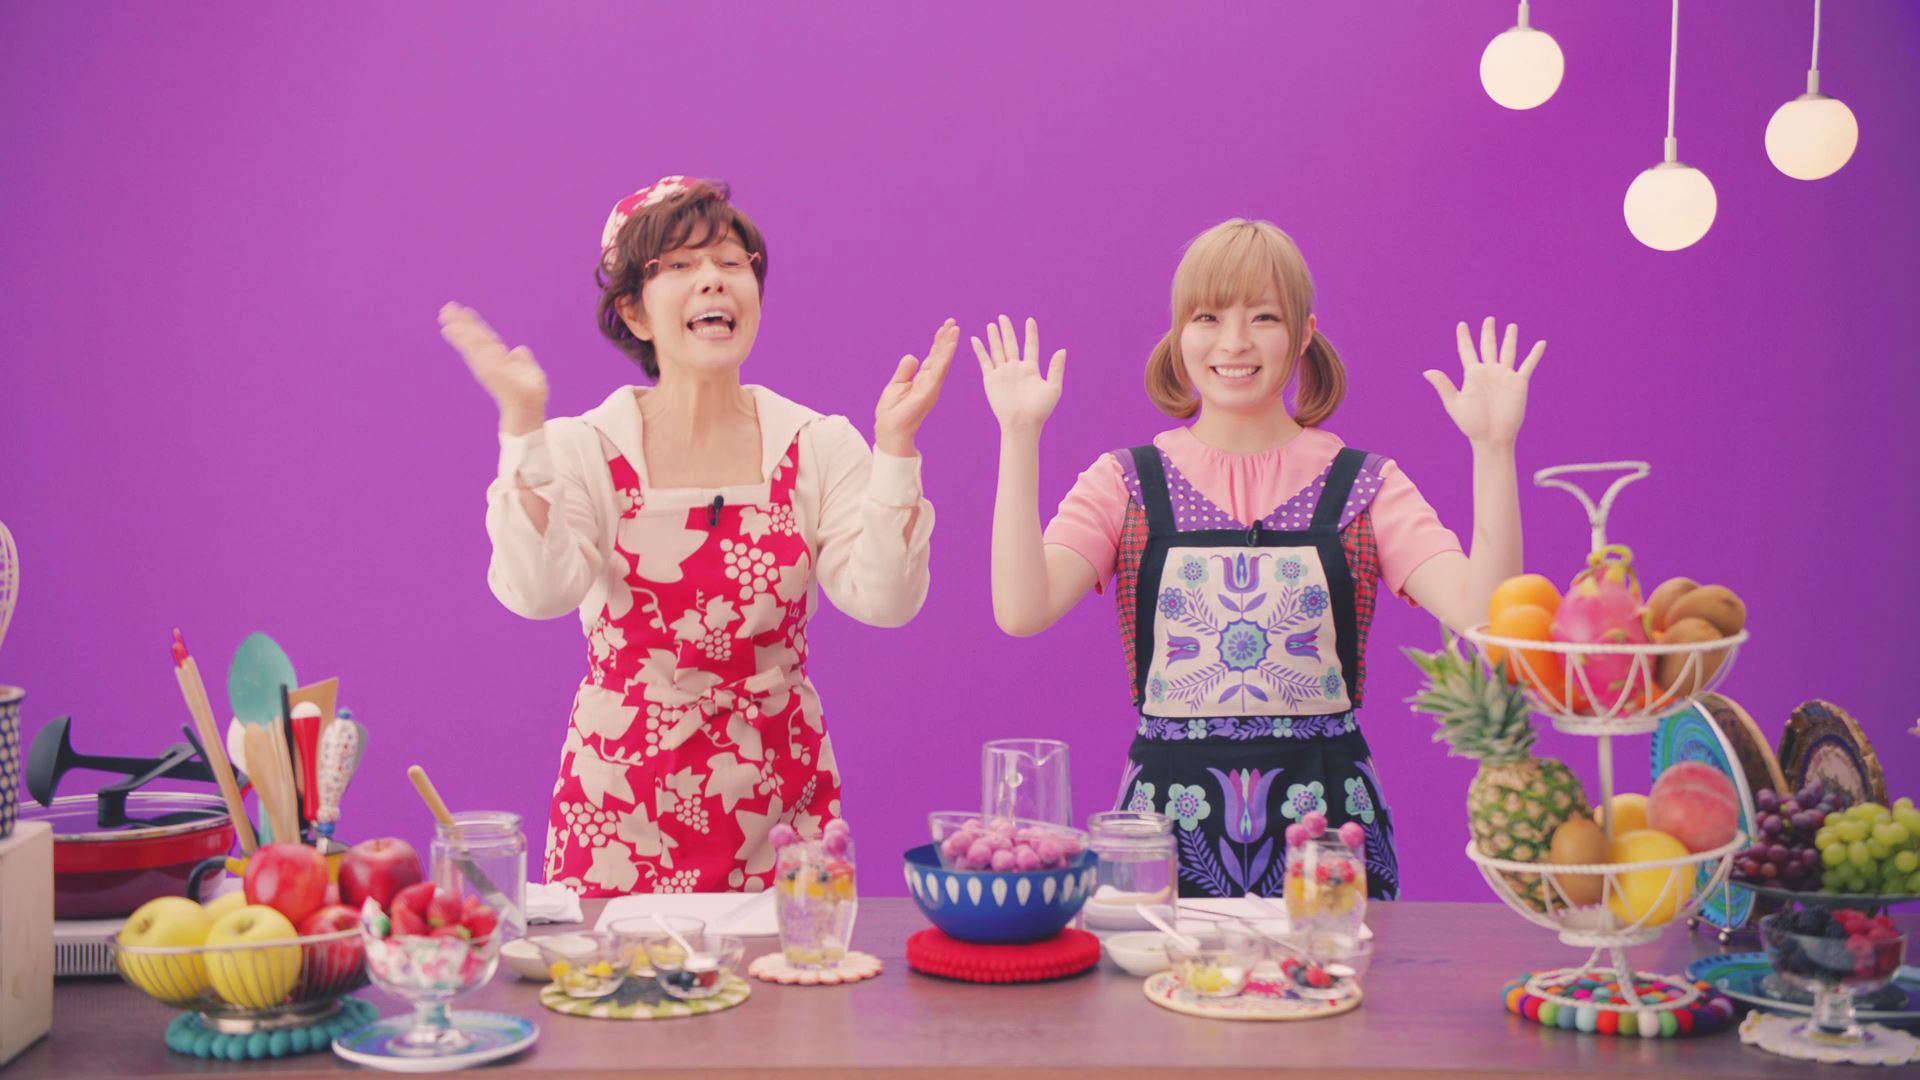 きゃりーぱみゅぱみゅ 平野レミ アイスの実レシピ動画を公開 Uroros